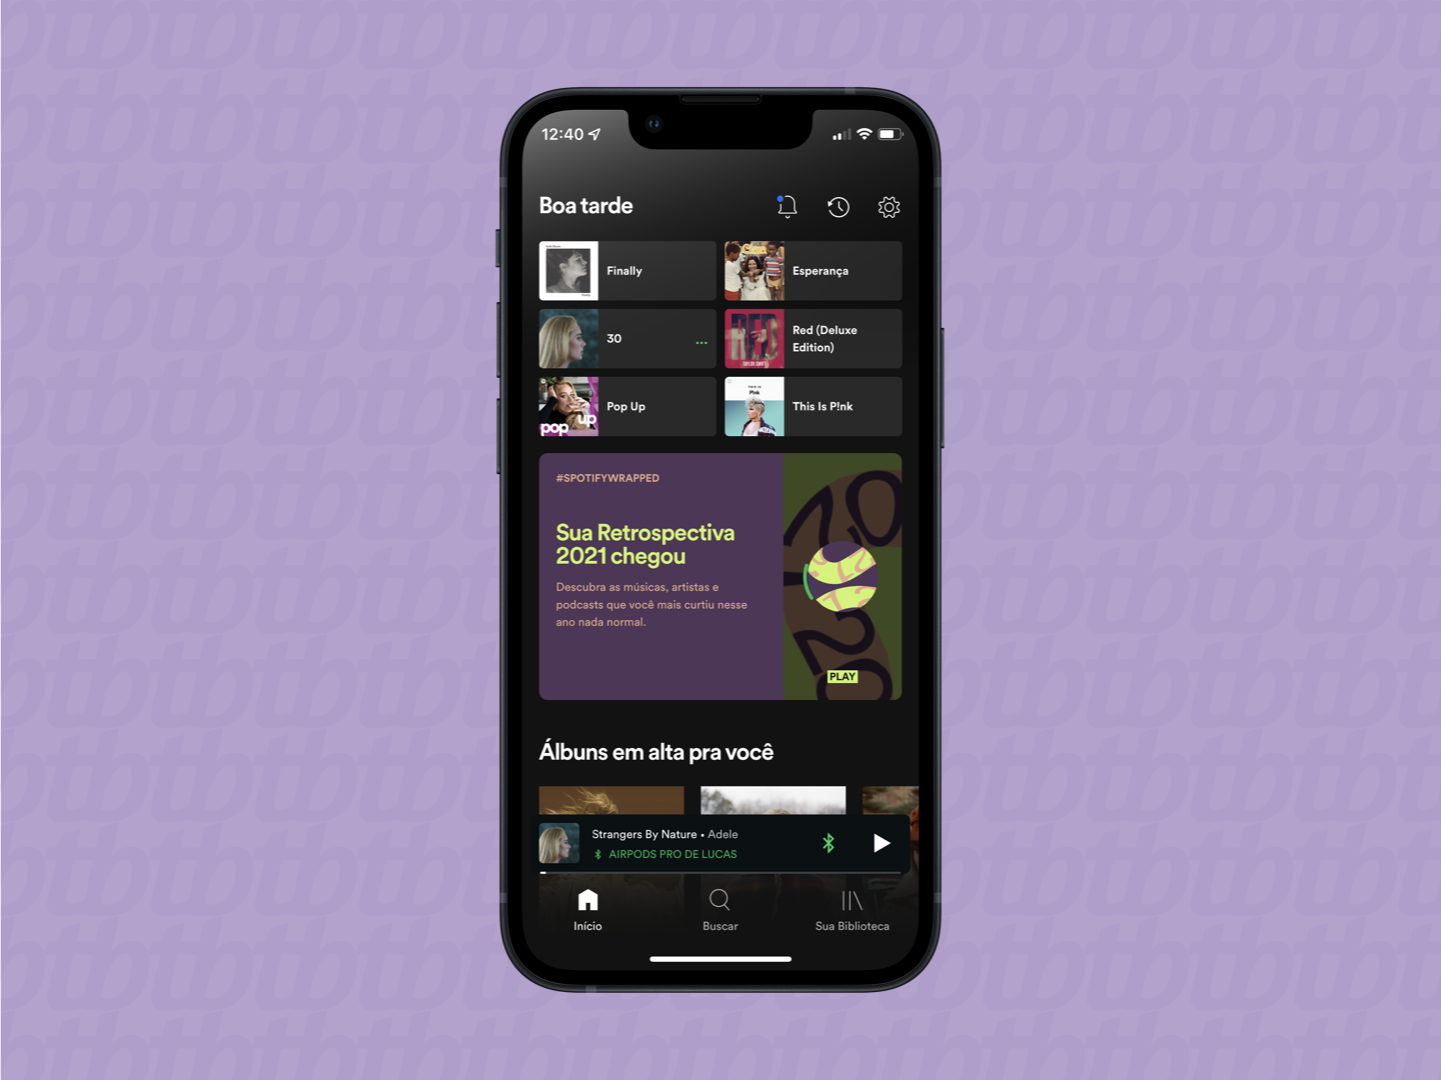 Tela inicial do Spotify com card para ver o Wrapped de 2021